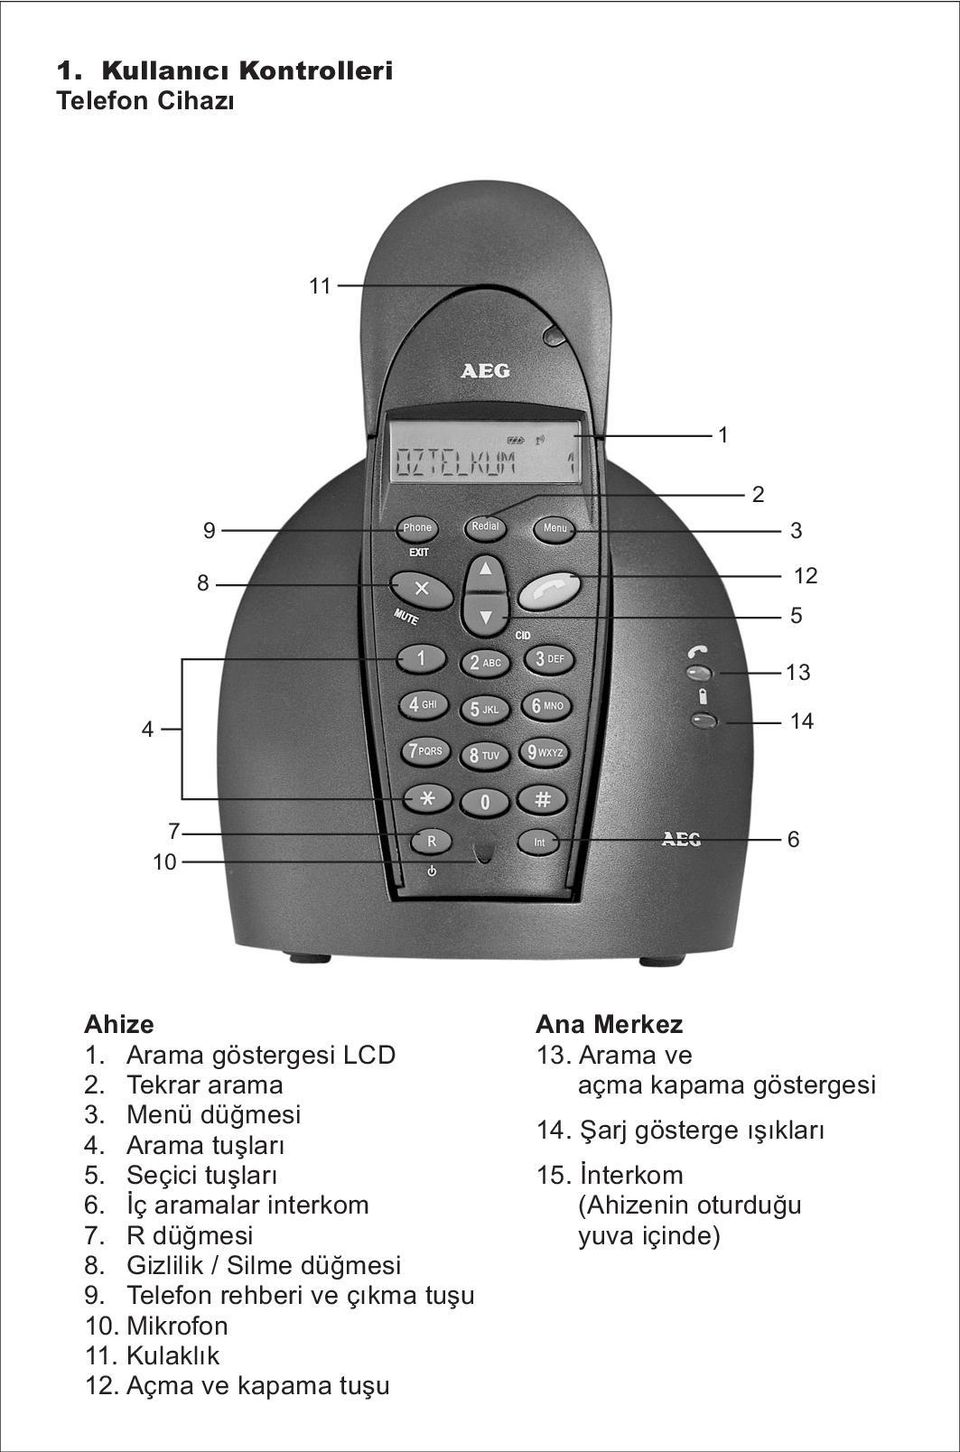 Gizlilik / Silme düğmesi 9. Telefon rehberi ve çıkma tuşu 10. Mikrofon 11. Kulaklık 12.